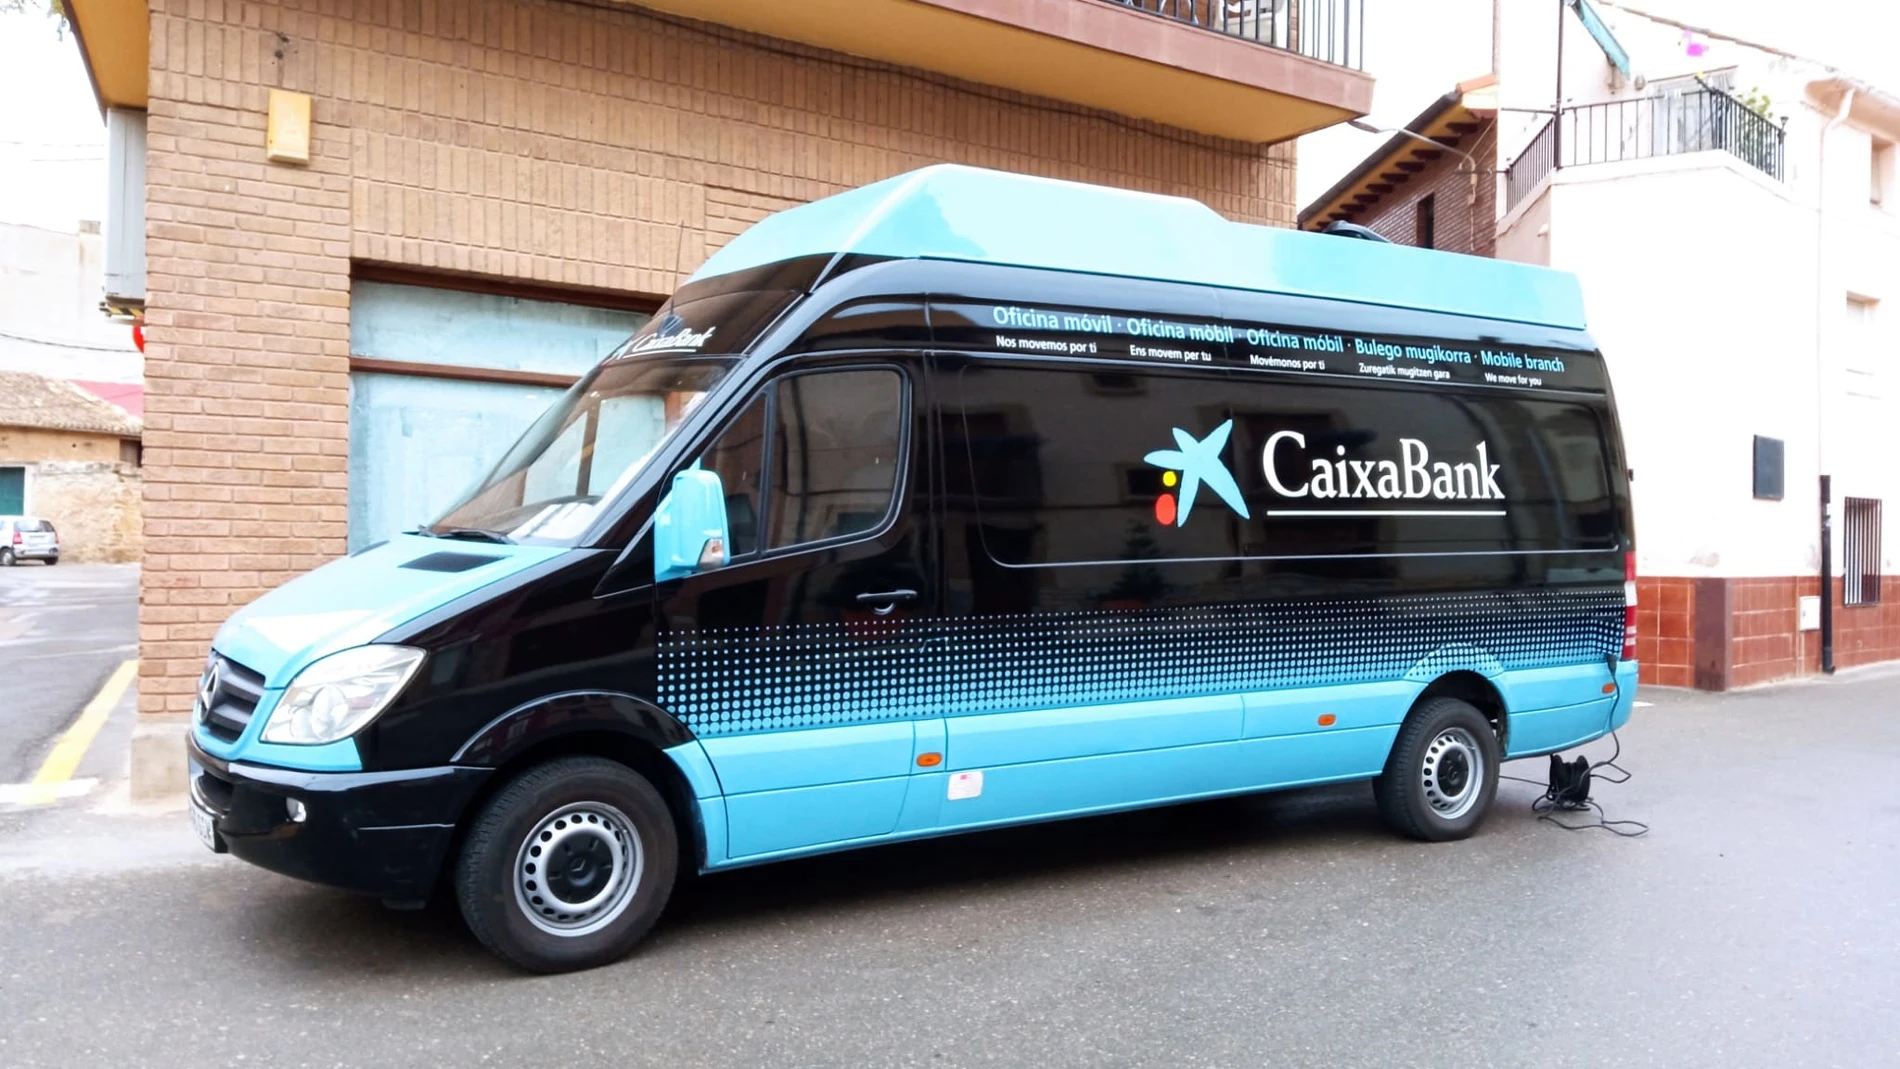 La oficina móvil de Caixabank que opera ya por los pueblos de Palencia